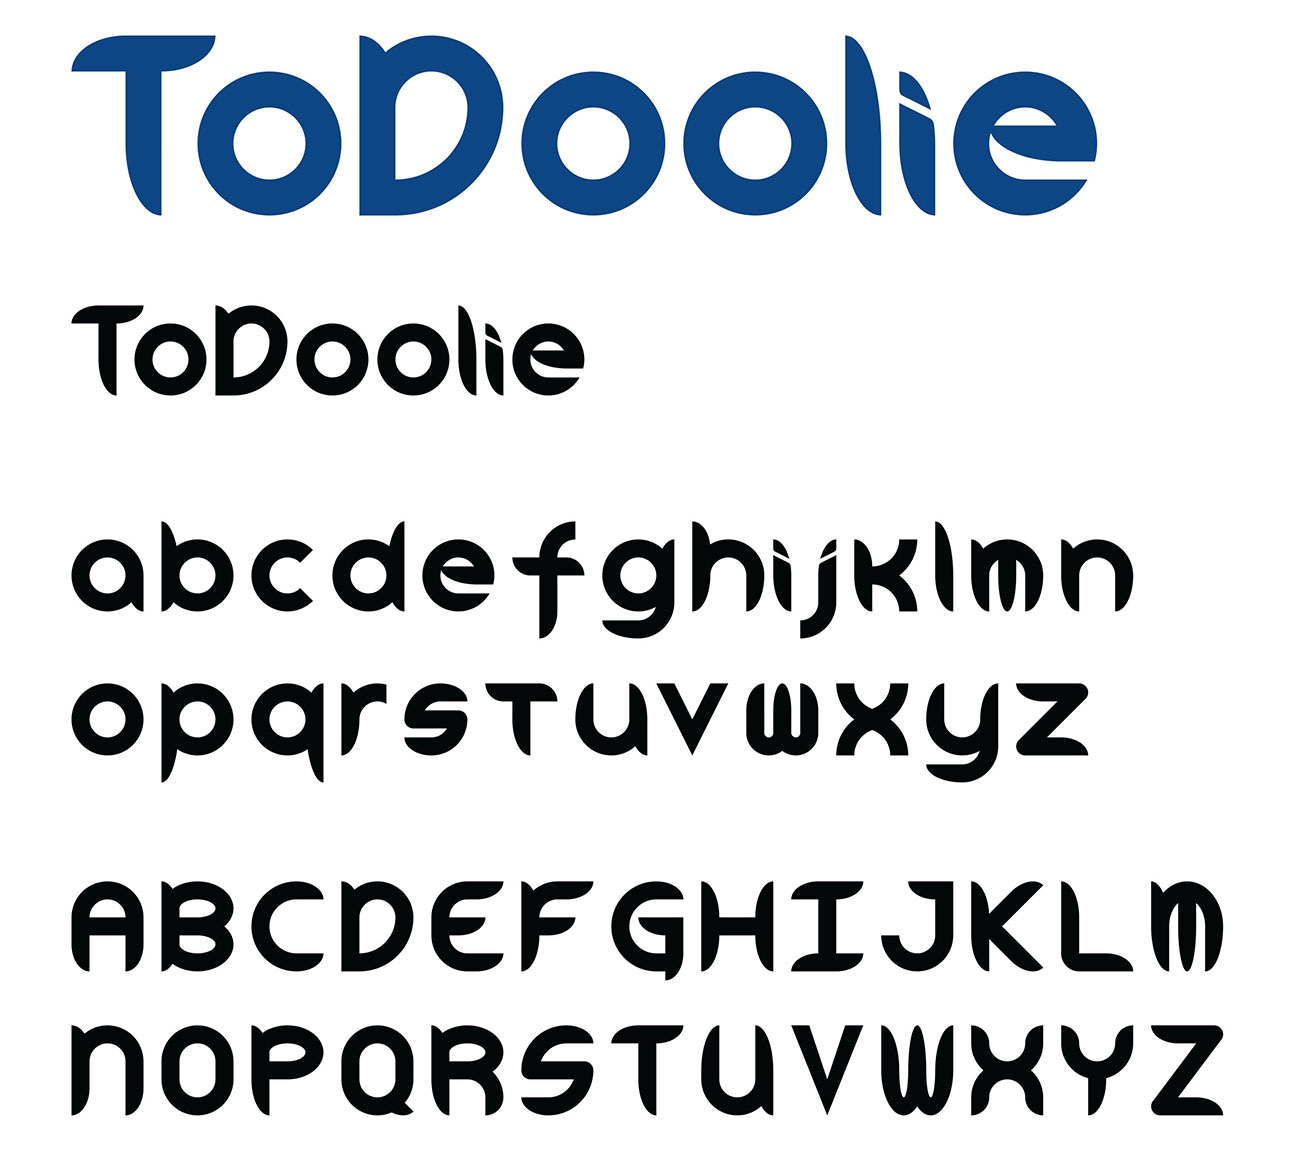 todoolie_typeface